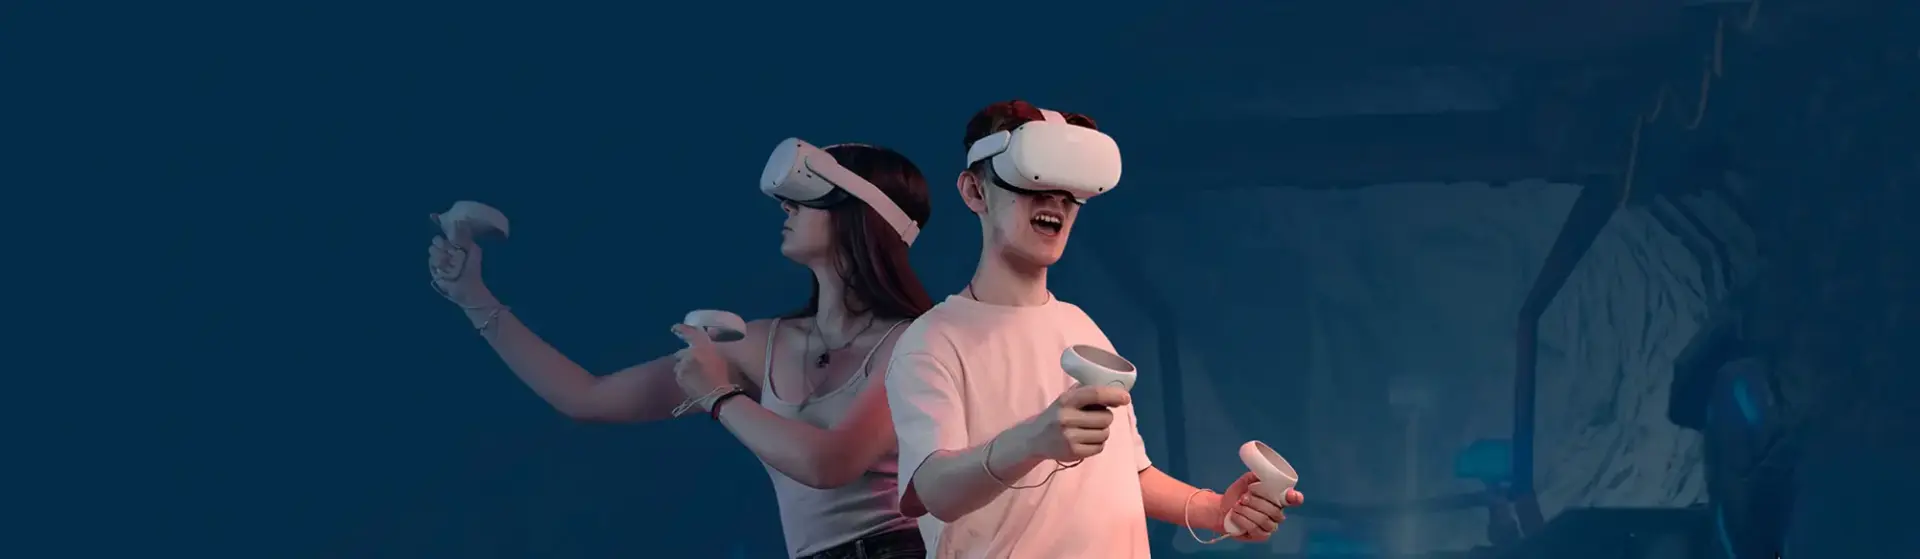 Центр виртуальной реальности Another World